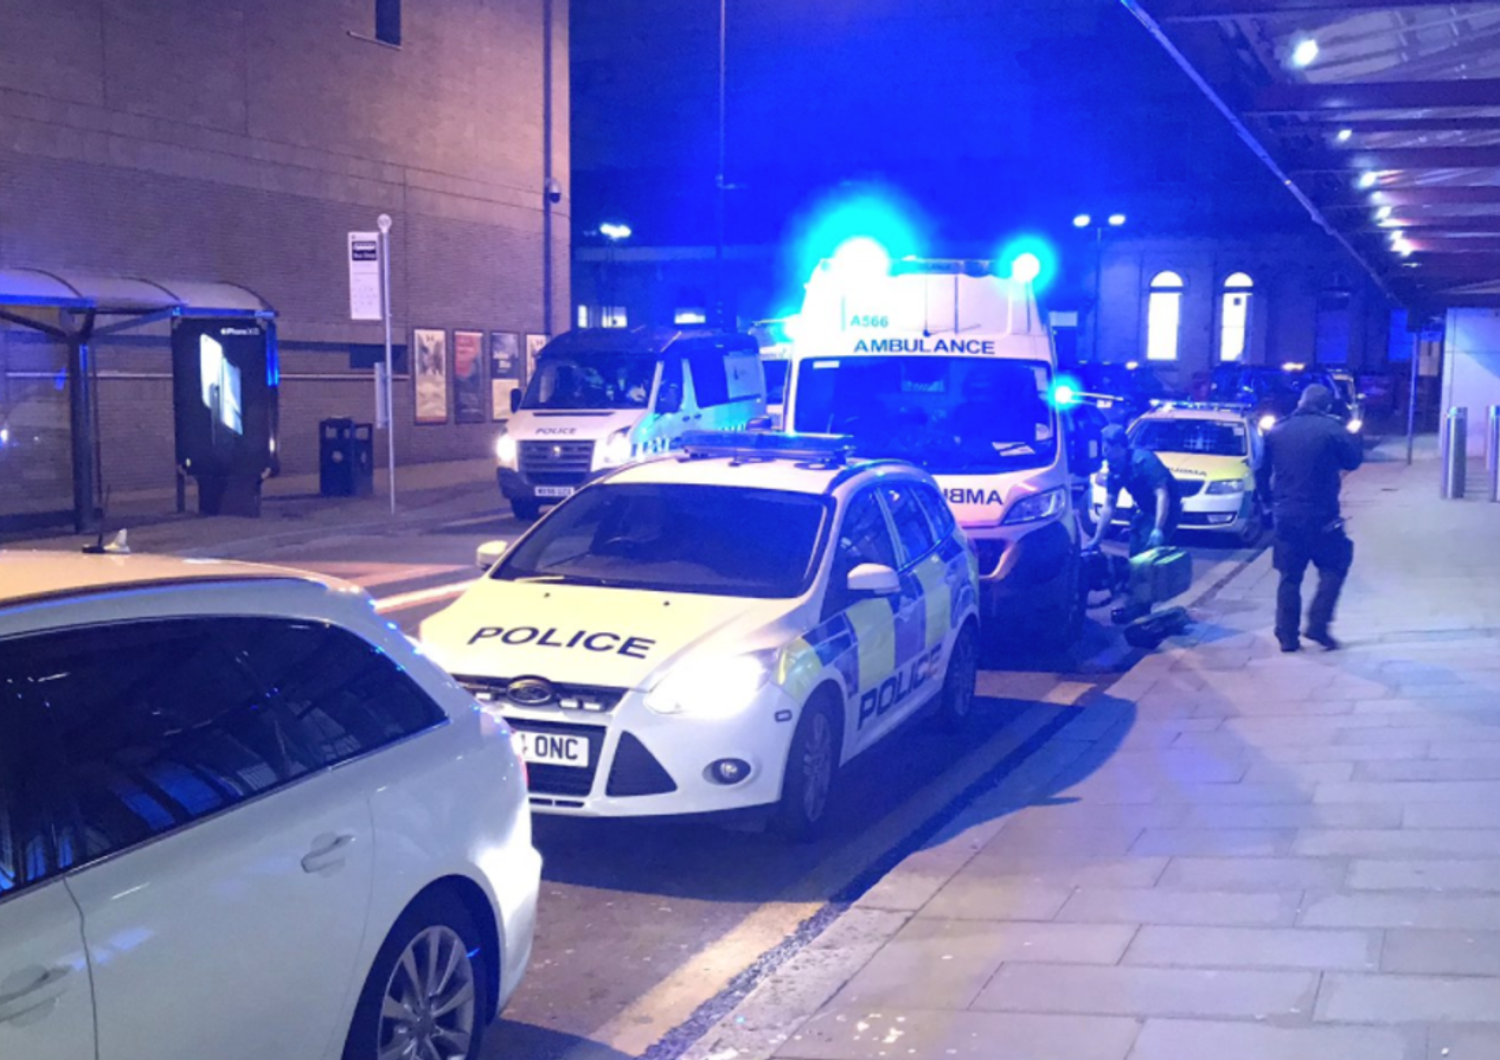 Un uomo ha accoltellato tre persone a Manchester, la polizia indaga per terrorismo